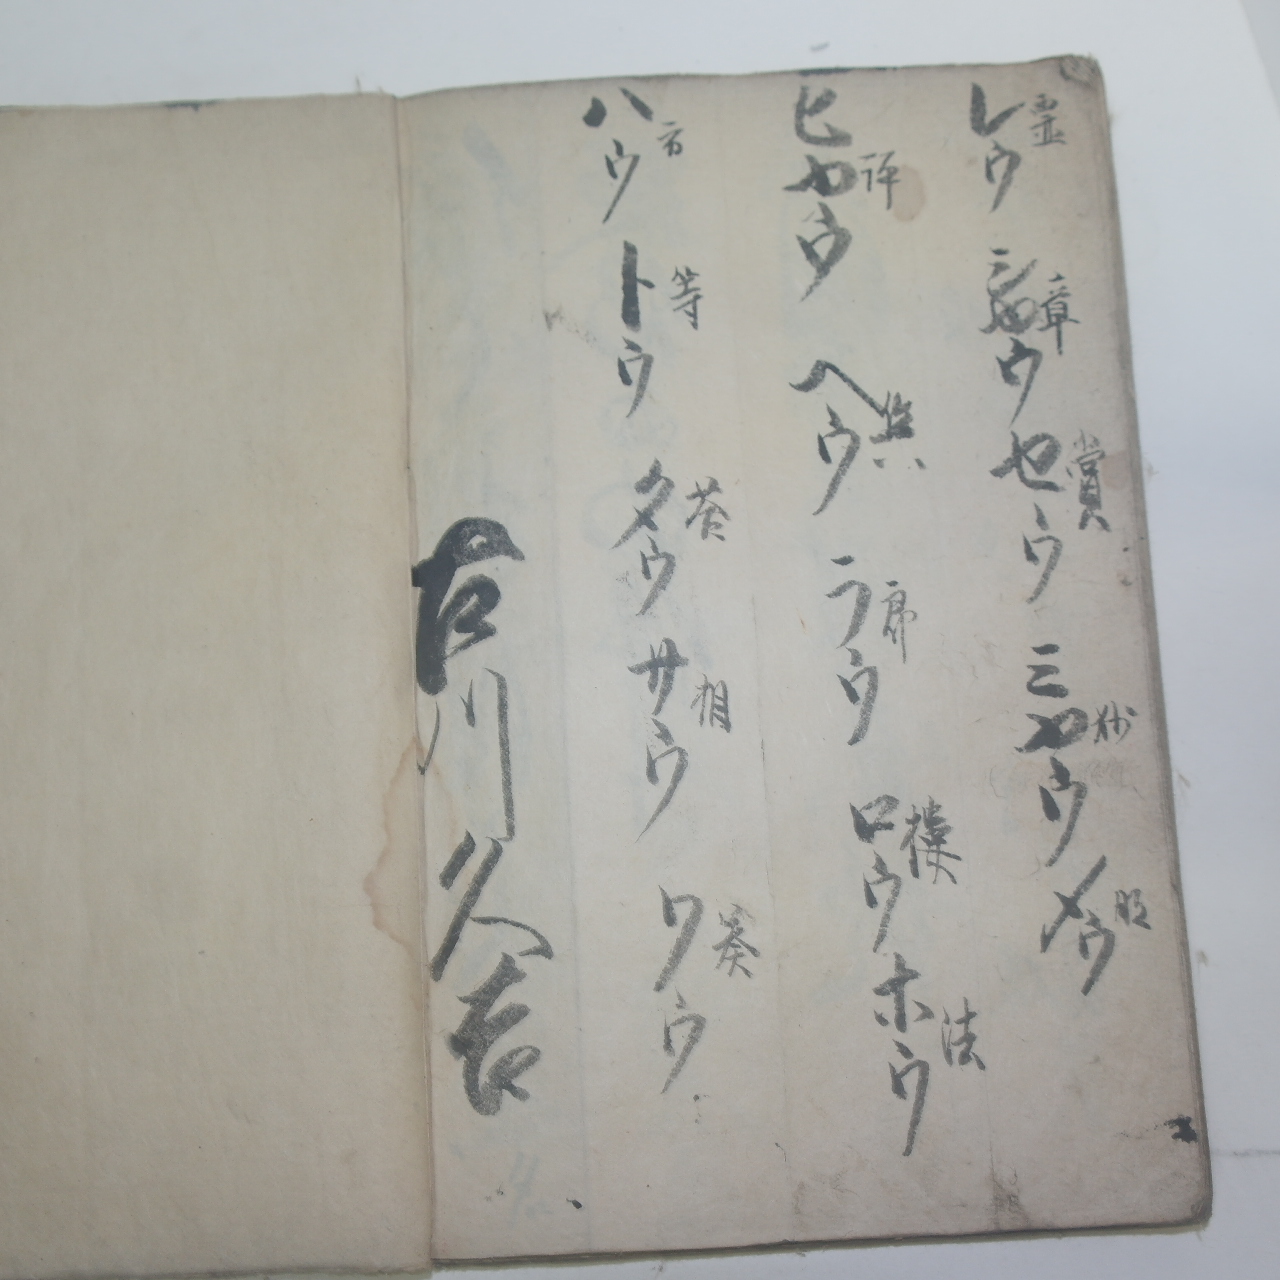 1854년(嘉永7年) 일본고필사본 어평본(御平本) 1책